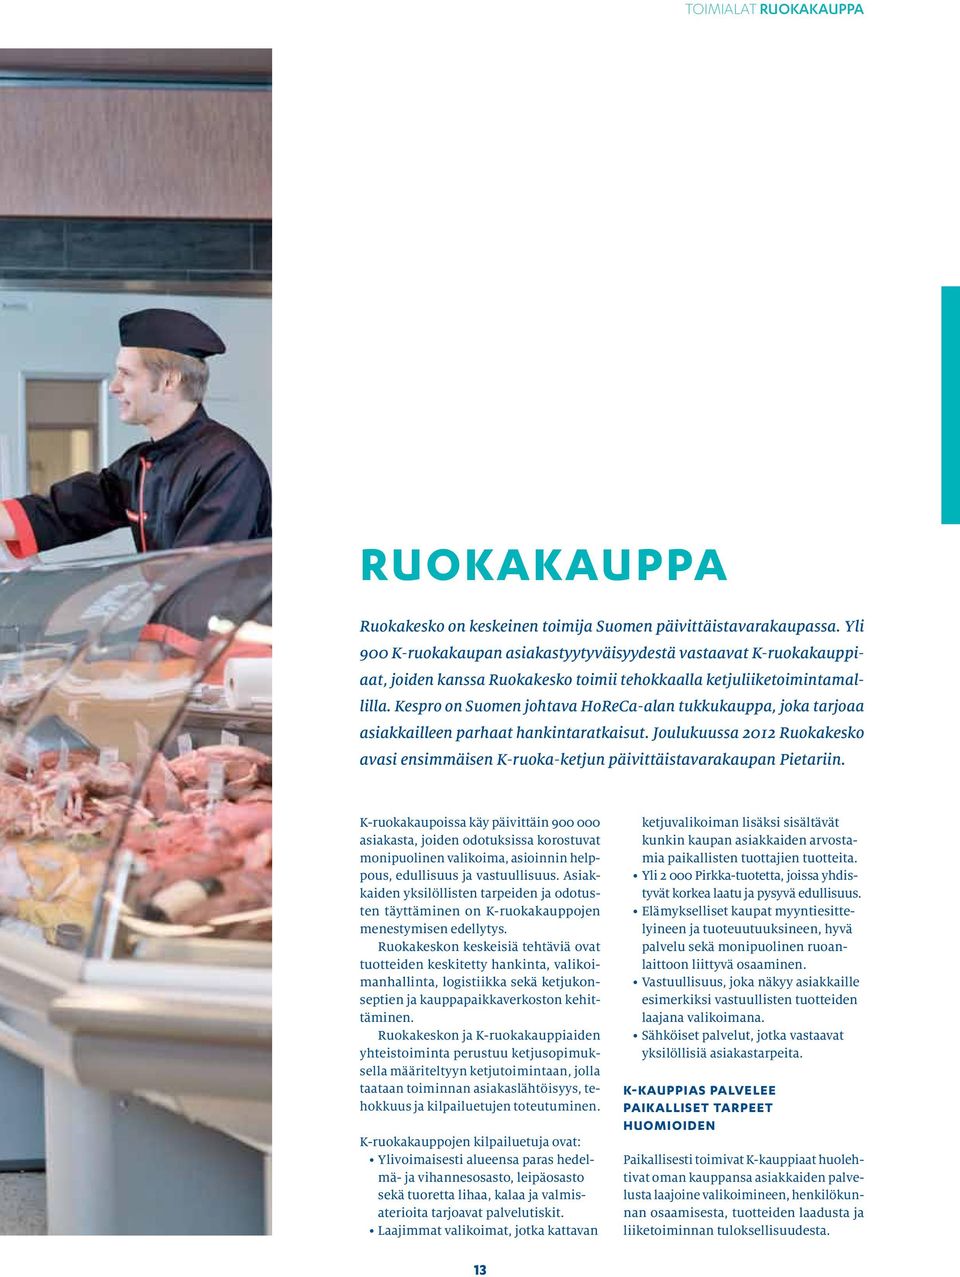 Kespro on Suomen johtava HoReCa-alan tukkukauppa, joka tarjoaa asiakkailleen parhaat hankintaratkaisut. Joulukuussa 2012 Ruokakesko avasi ensimmäisen K-ruoka-ketjun päivittäistavarakaupan Pietariin.